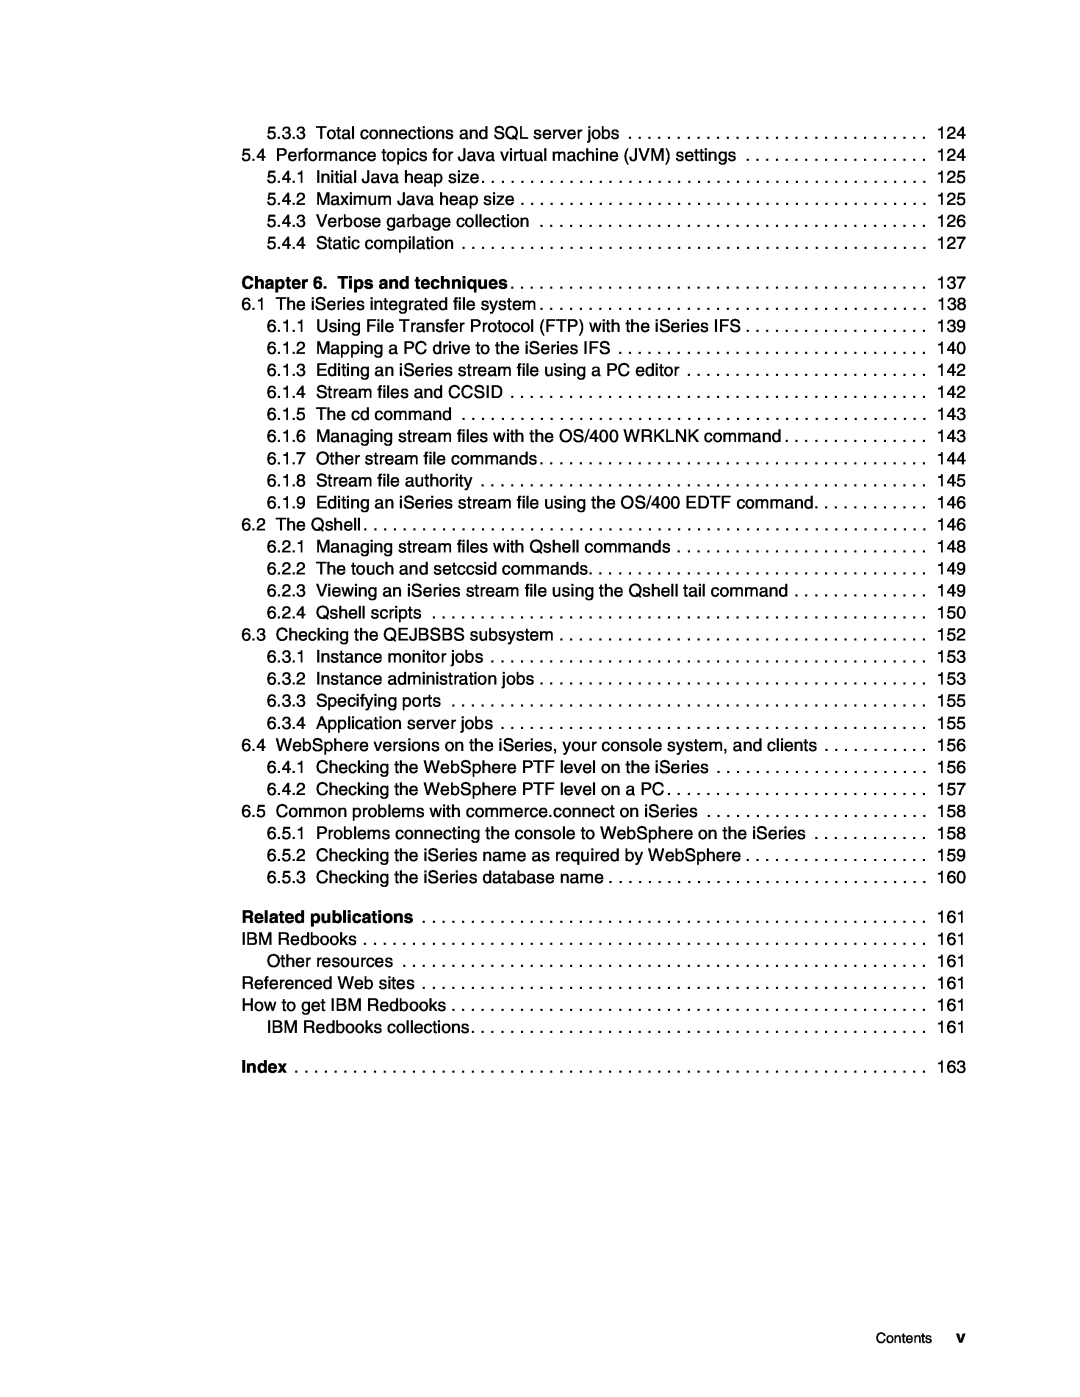 IBM SG24-6526-00 manual Index, Contents 